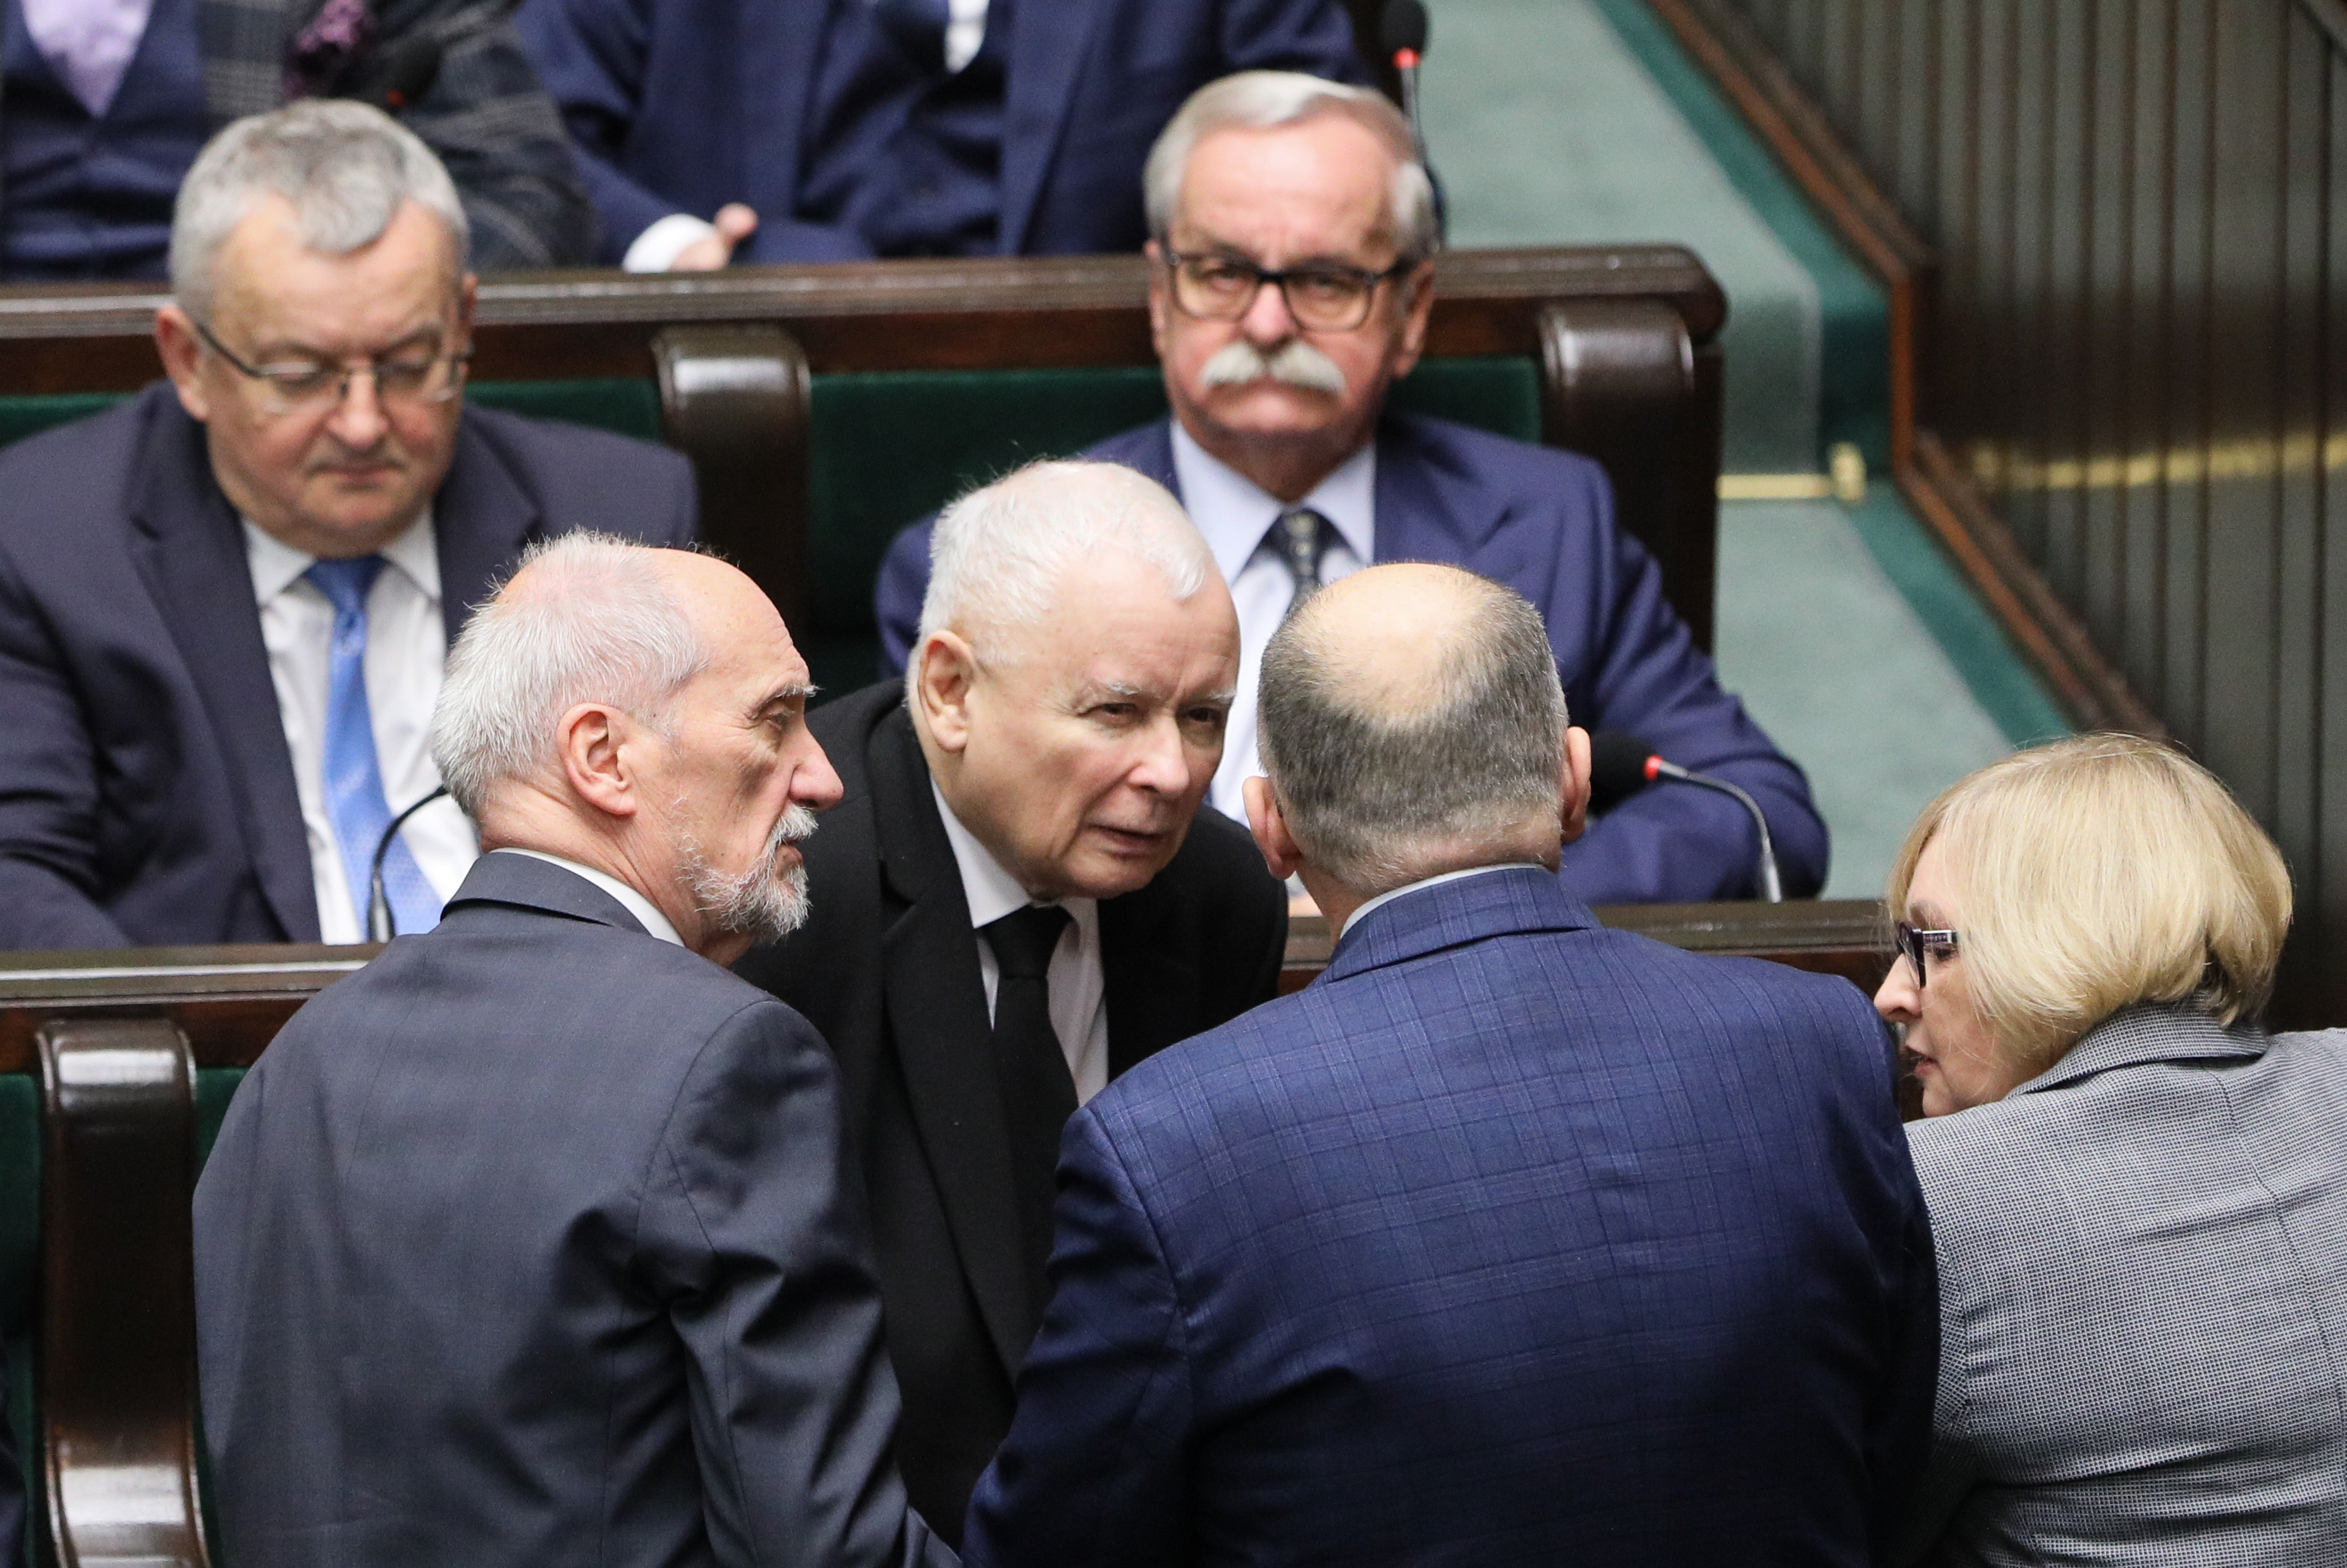 Prezes PiS Jarosław Kaczyński, poseł PiS Antoni Macierewicz i posłanka PiS Barbara Bartuś na sali obrad Sejmu w Warszawie